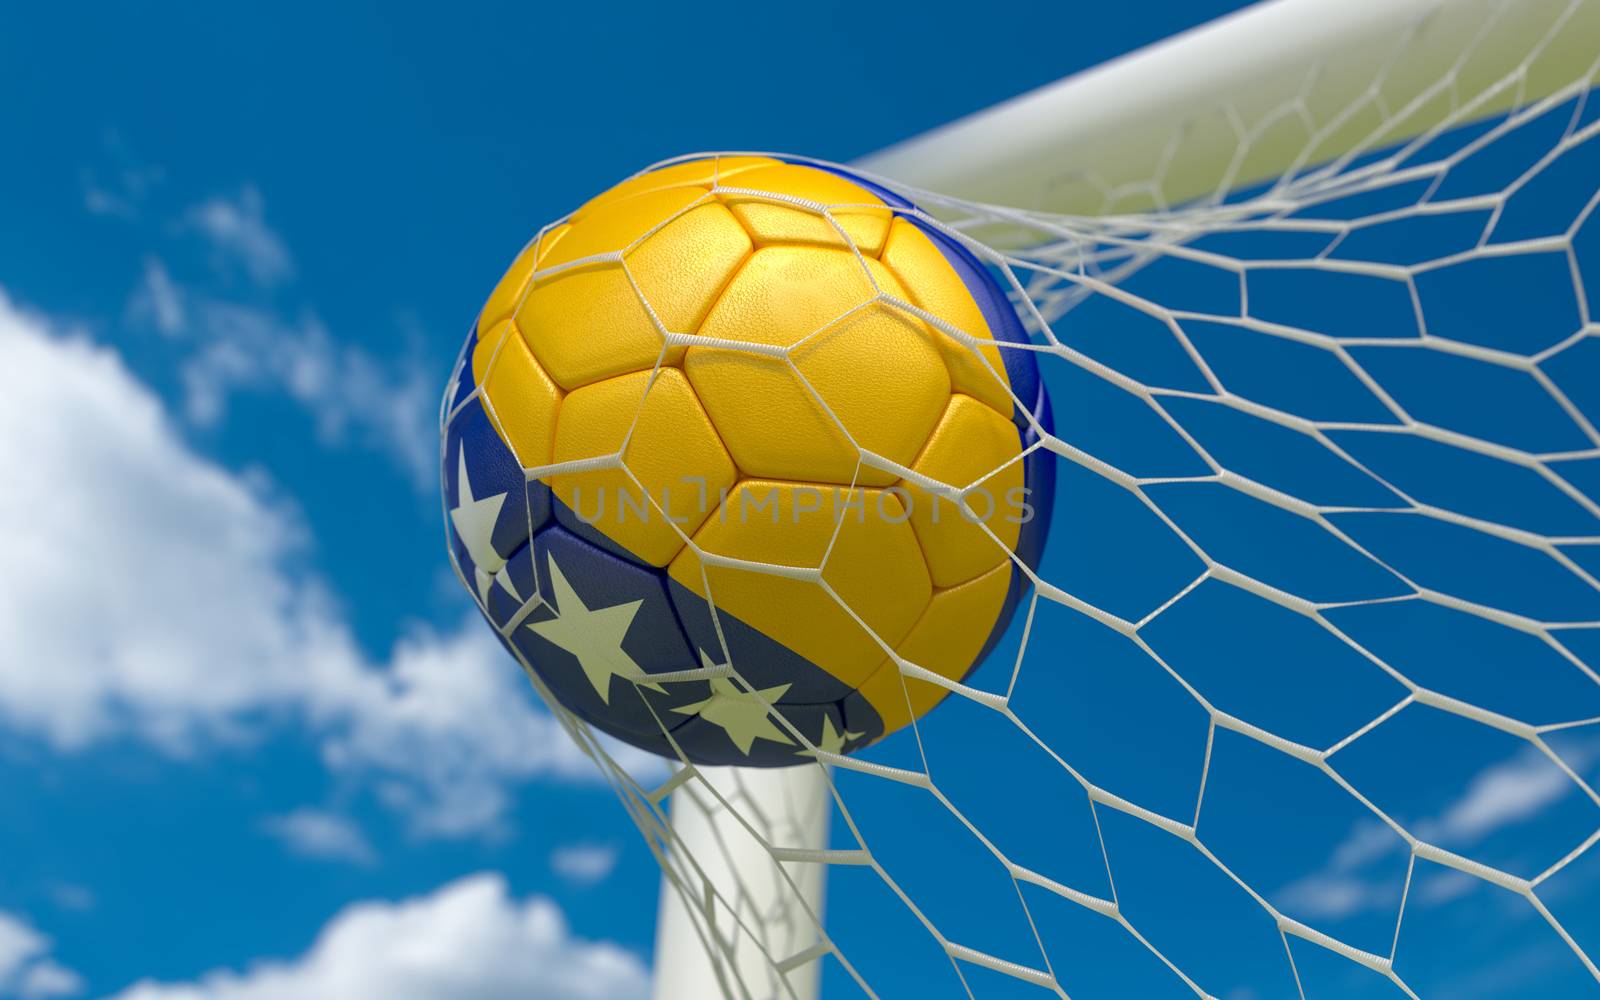  Bosnia and Herzegovina flag and soccer ball, football in goal net